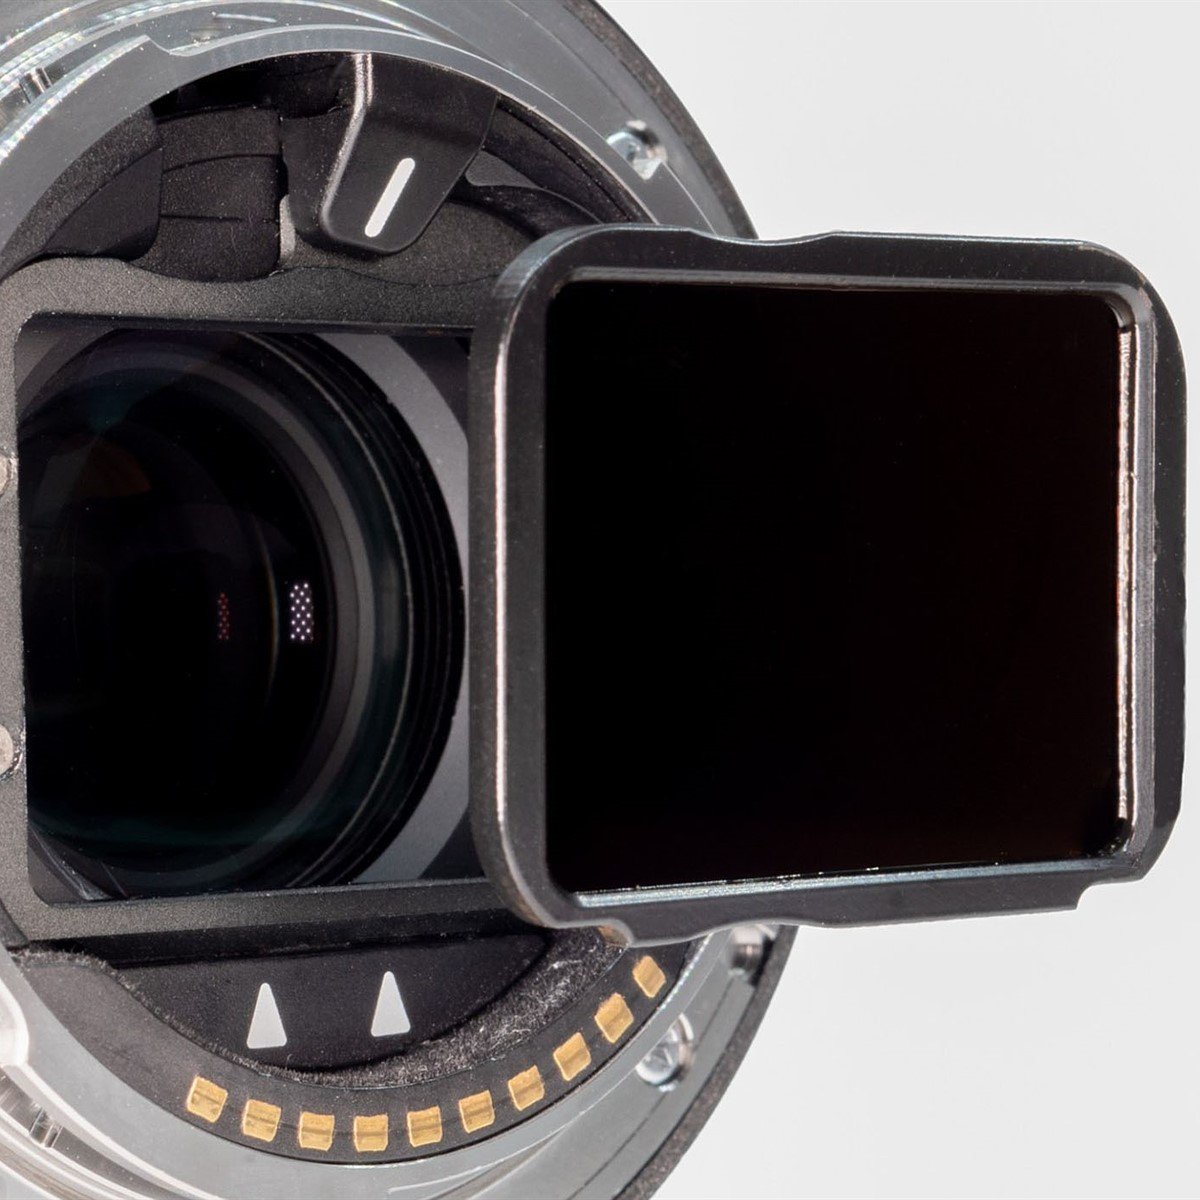 Aurora Aperture giới thiệu hệ thống filter sau dành cho ống kính góc siêu rộng Sony